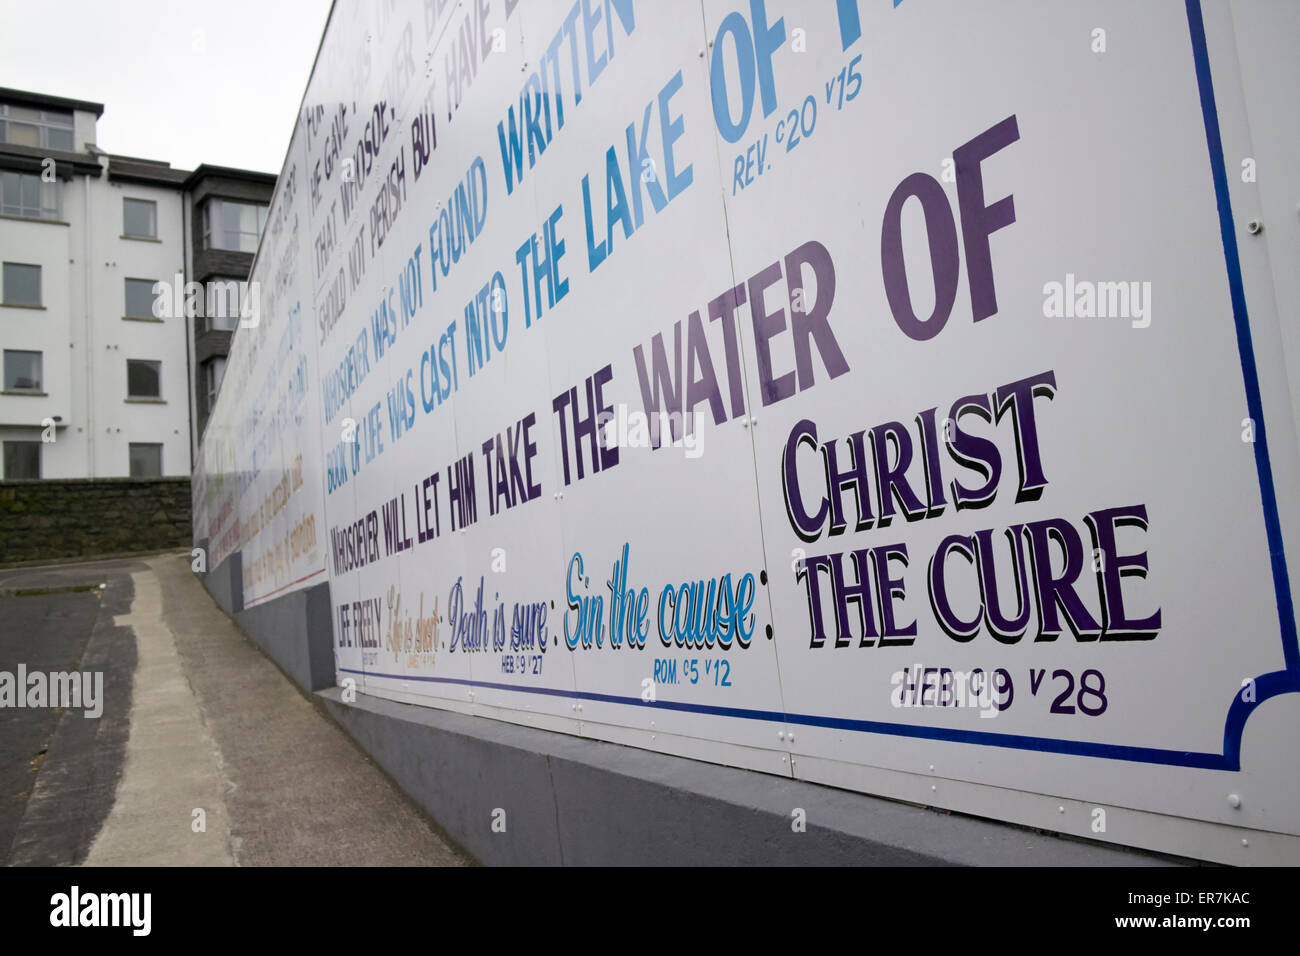 Eglise chrétienne évangélique de slogans sur le mur d'une maison en Irlande du Nord Banque D'Images